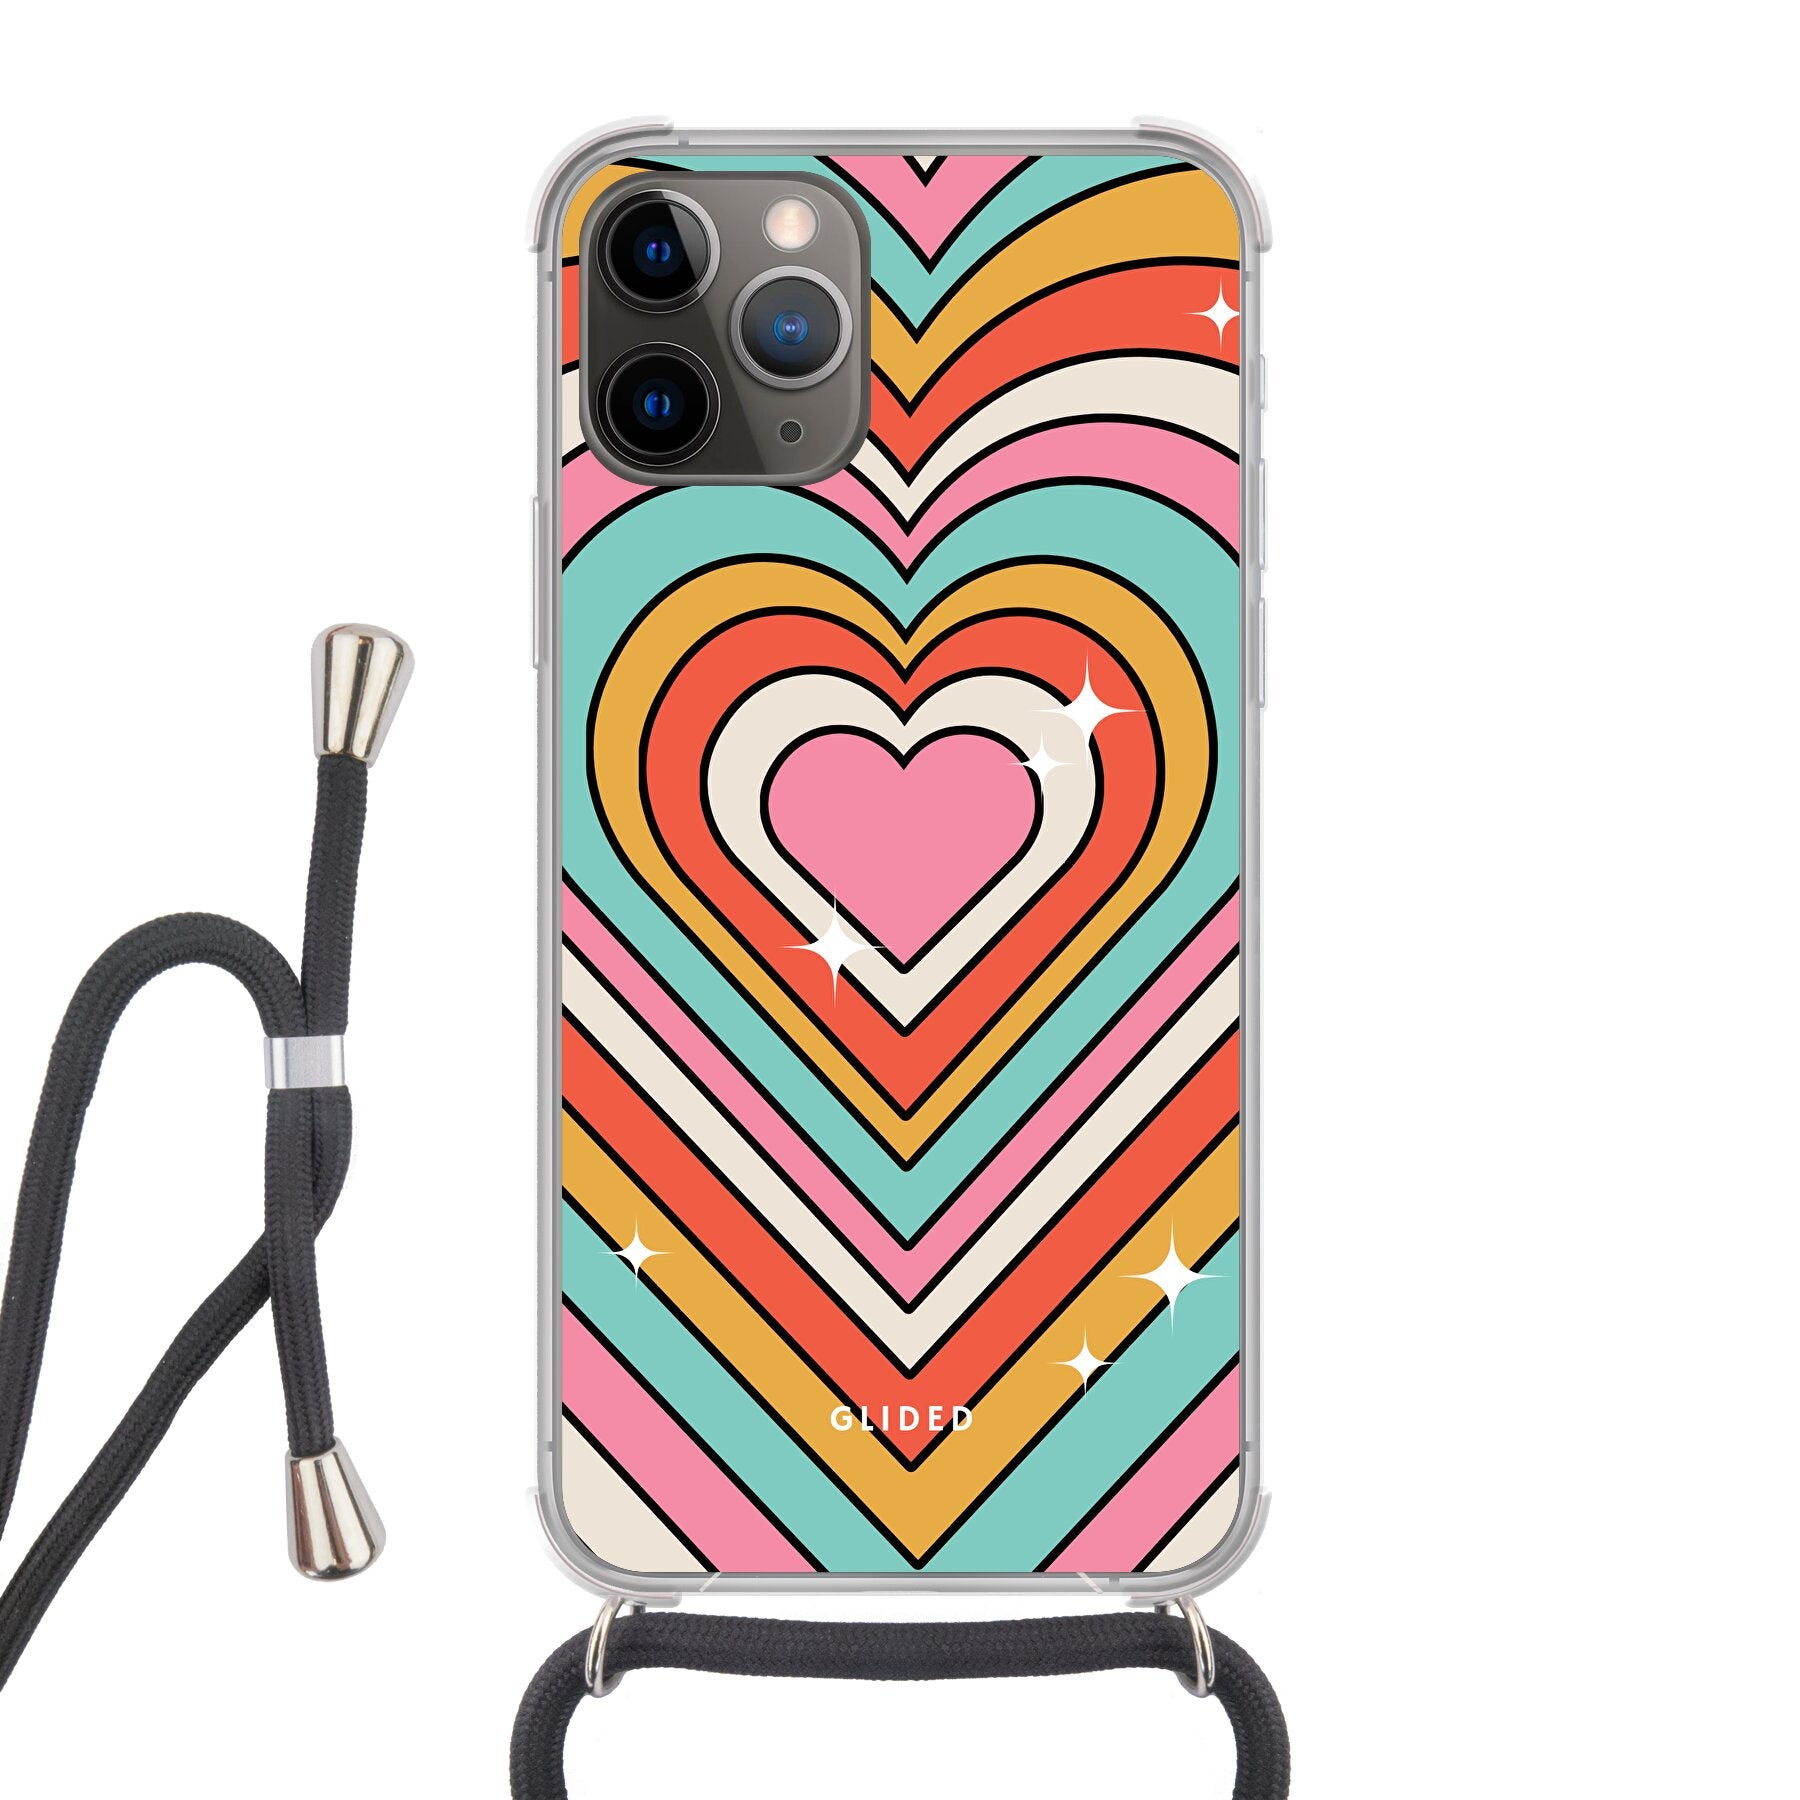 Endless Love - iPhone 11 Pro Handyhülle - Soft case von Glided